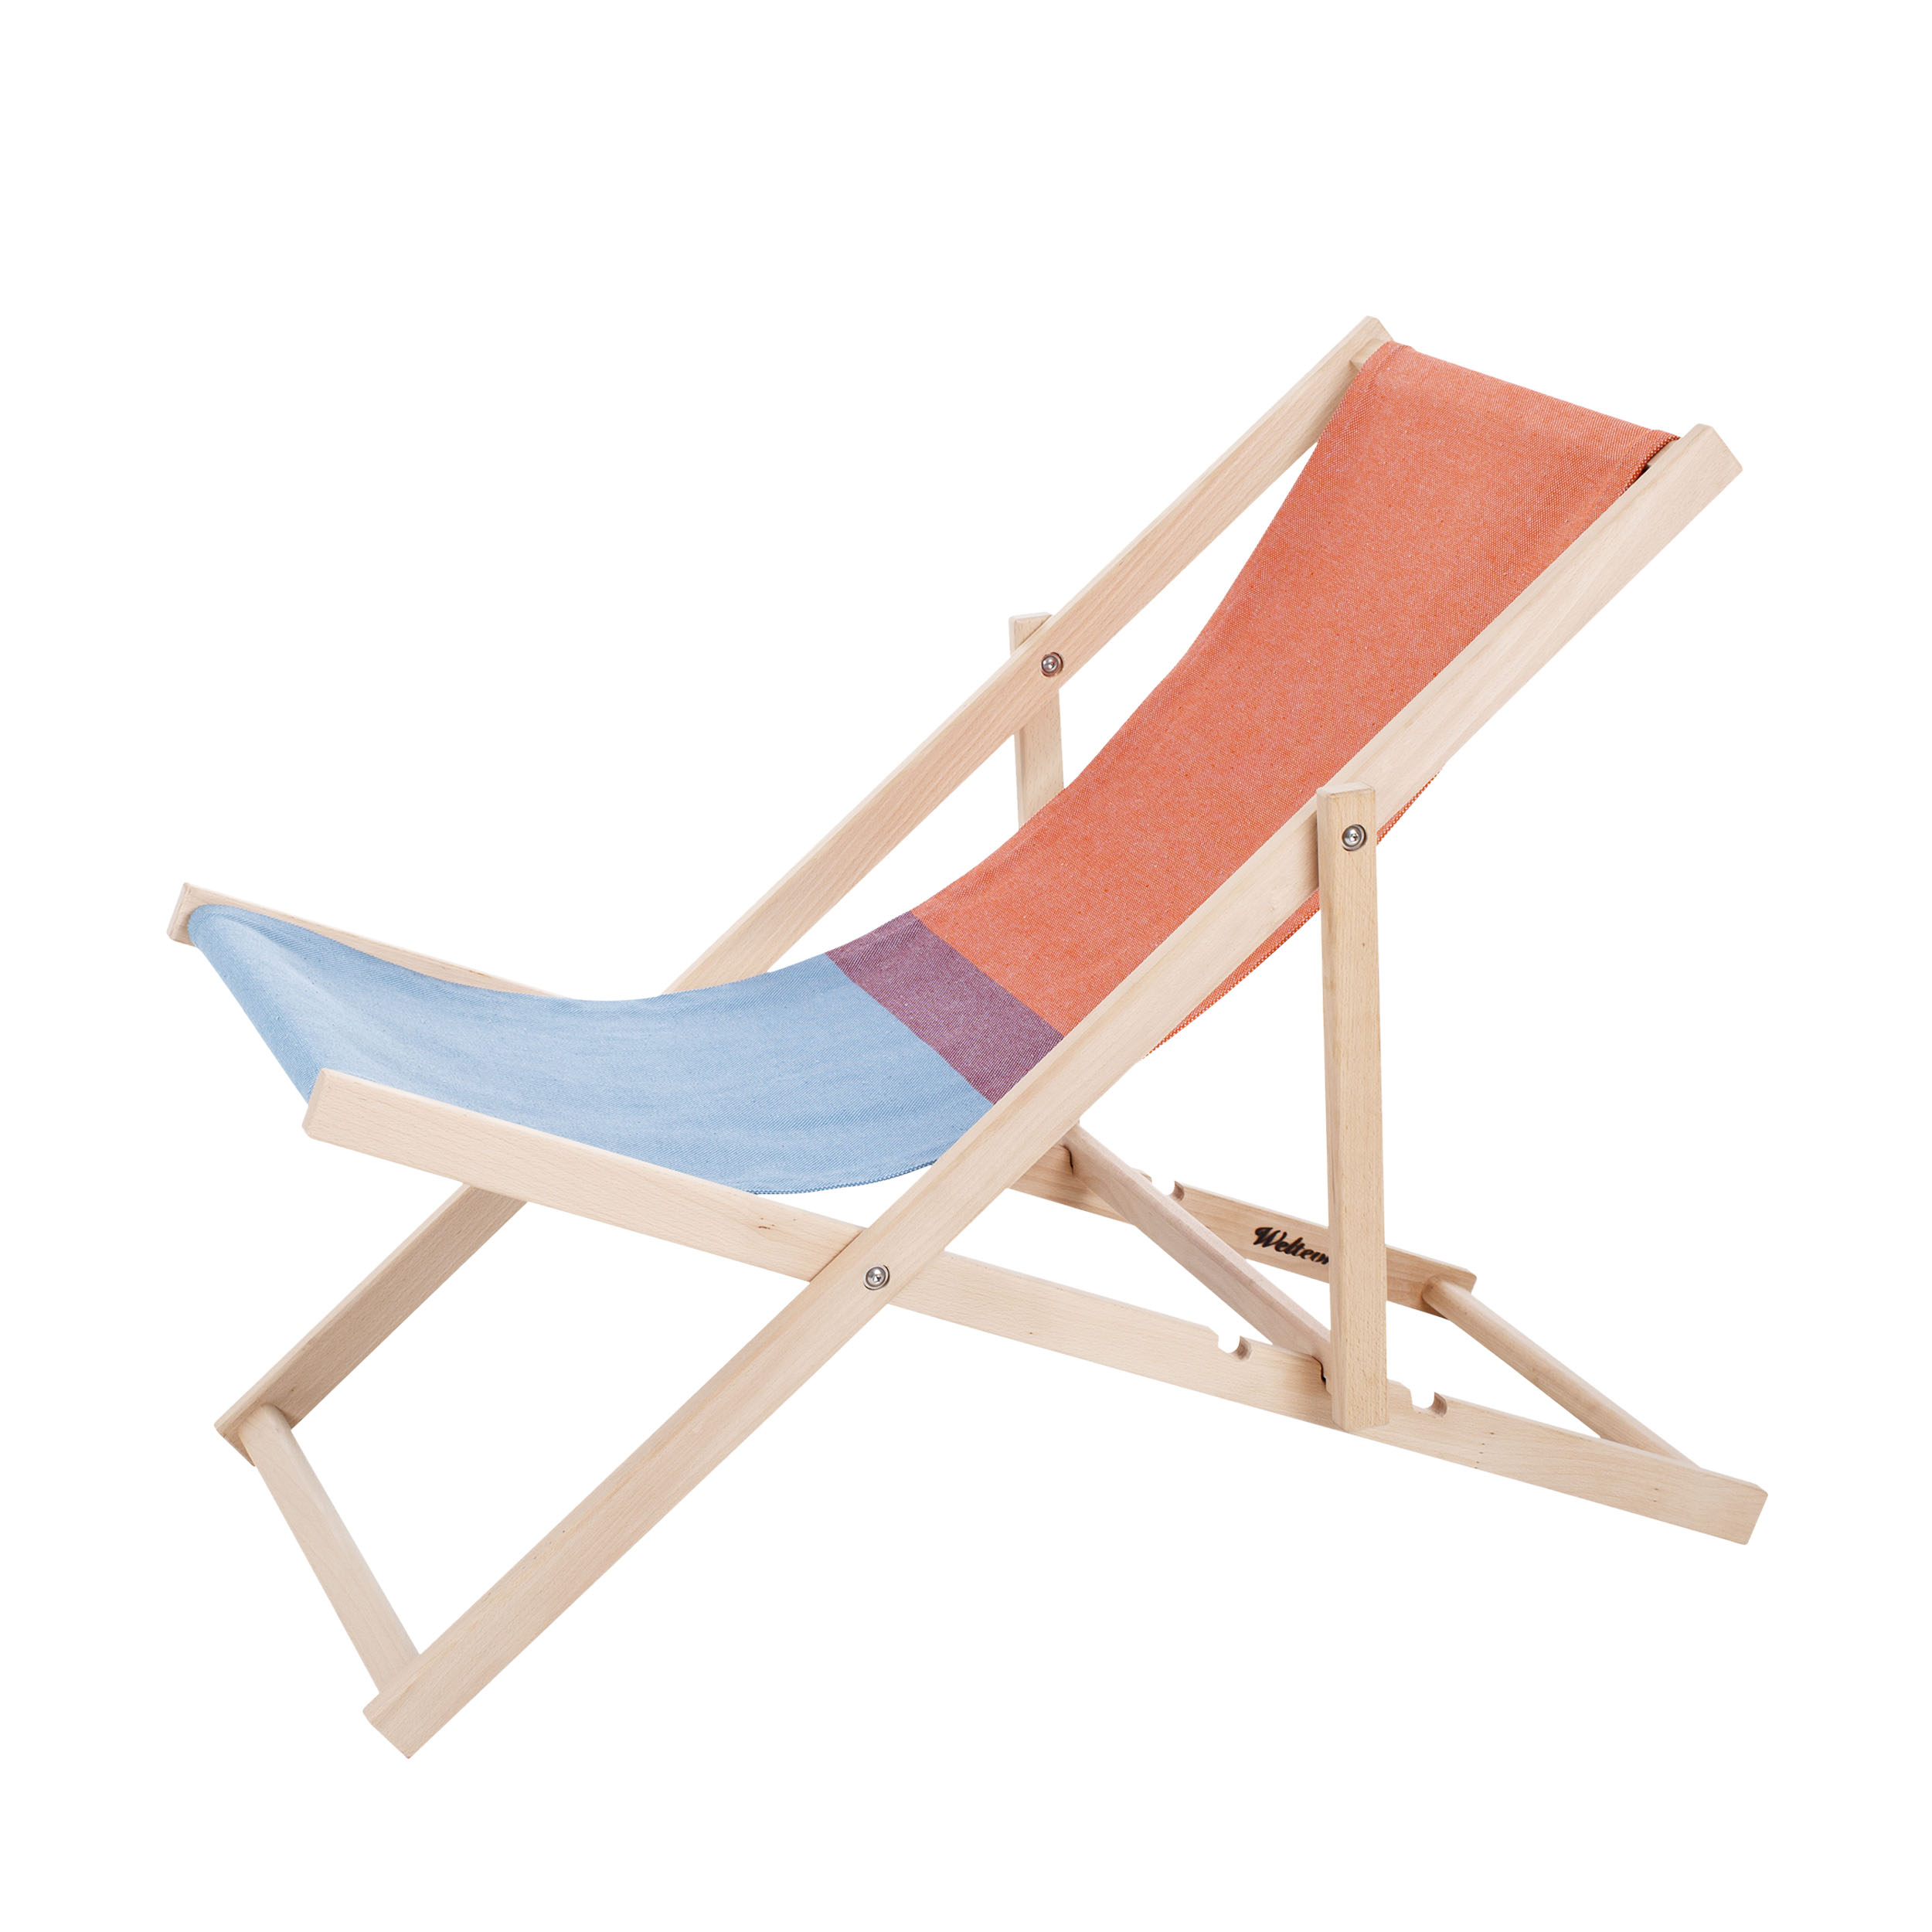 Chaise longue Beach Chair